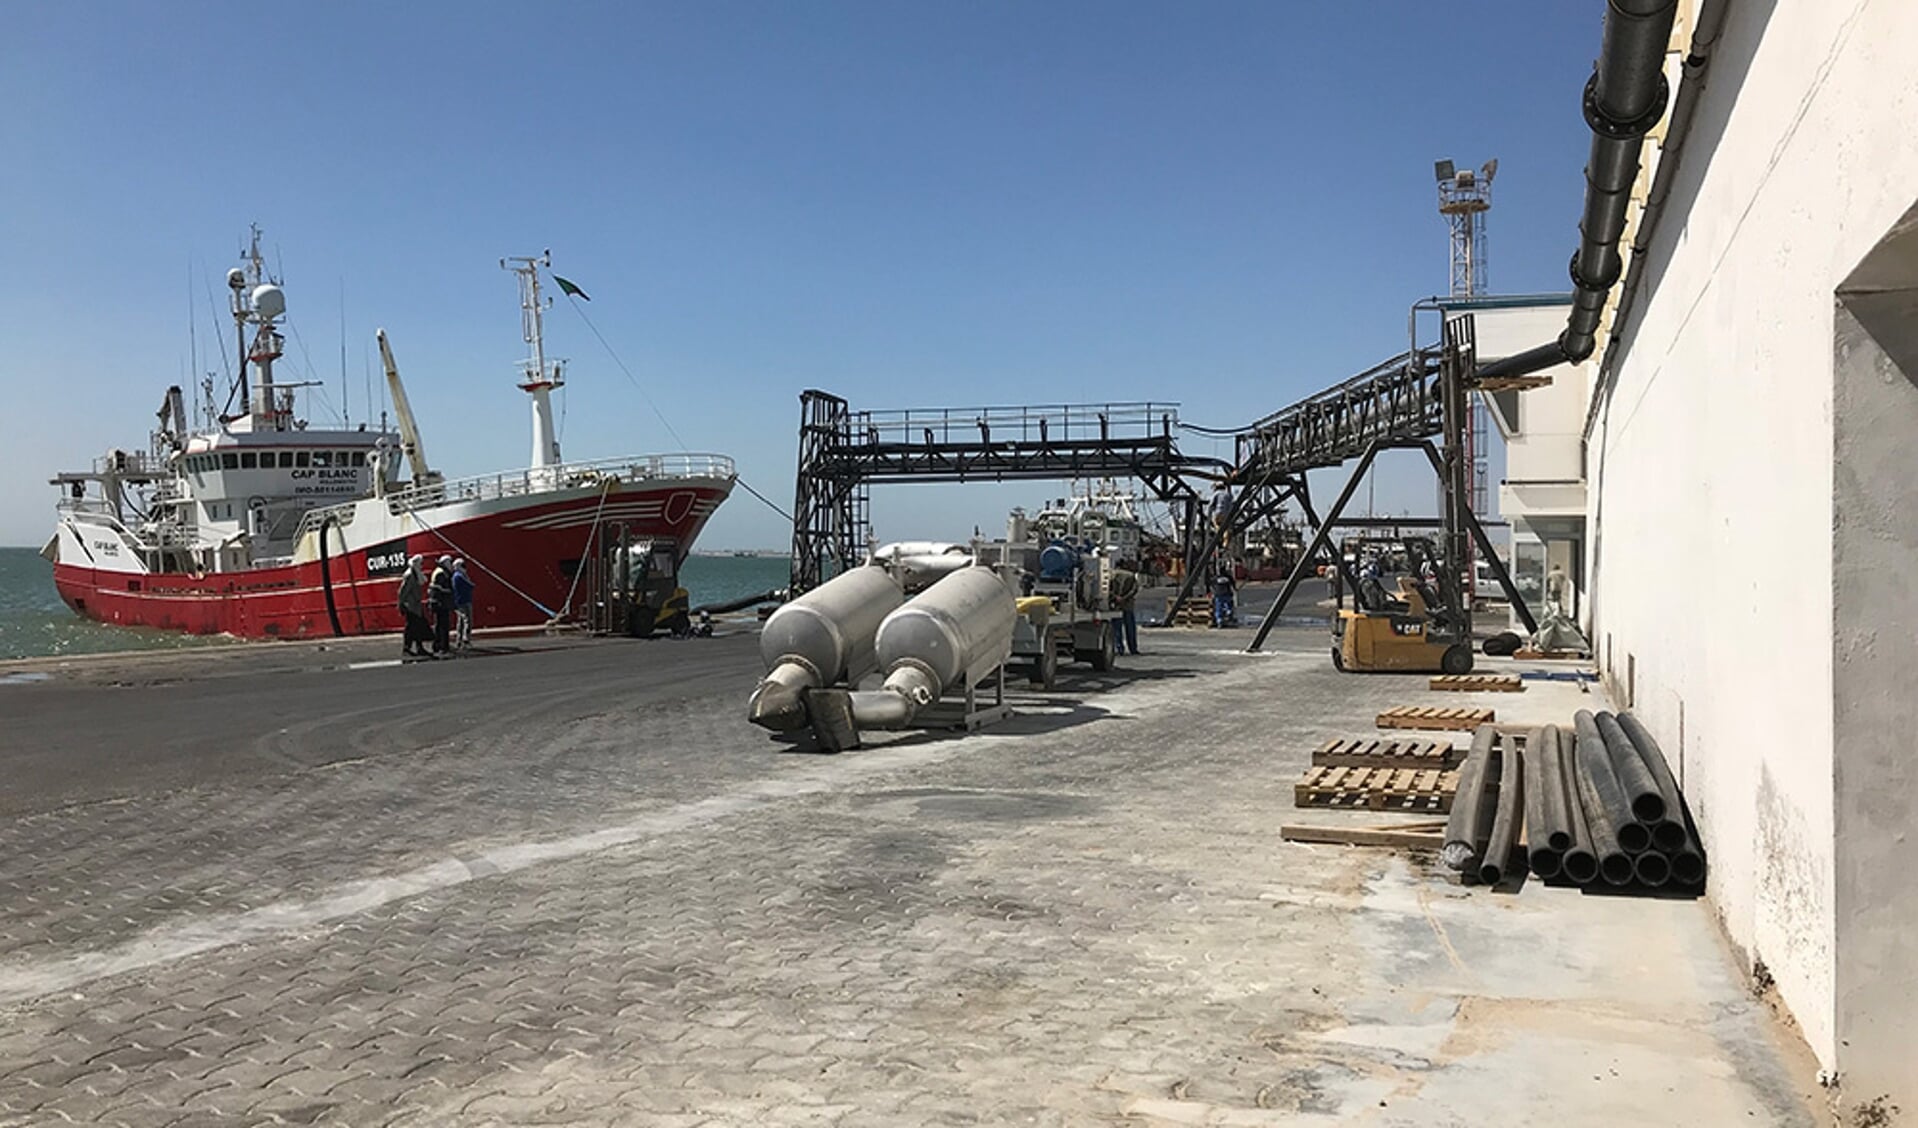  De u2018Cap Blancu2019 voor de kade van Cap Blanc Pelagique (CBP), de fabriek van Cornelis Vrolijk in Nouadhibou. Door de intensieve visserij voor de vismeelindustrie de afgelopen jaren gaan voor alle schepen de vangsten hard achteruit. 